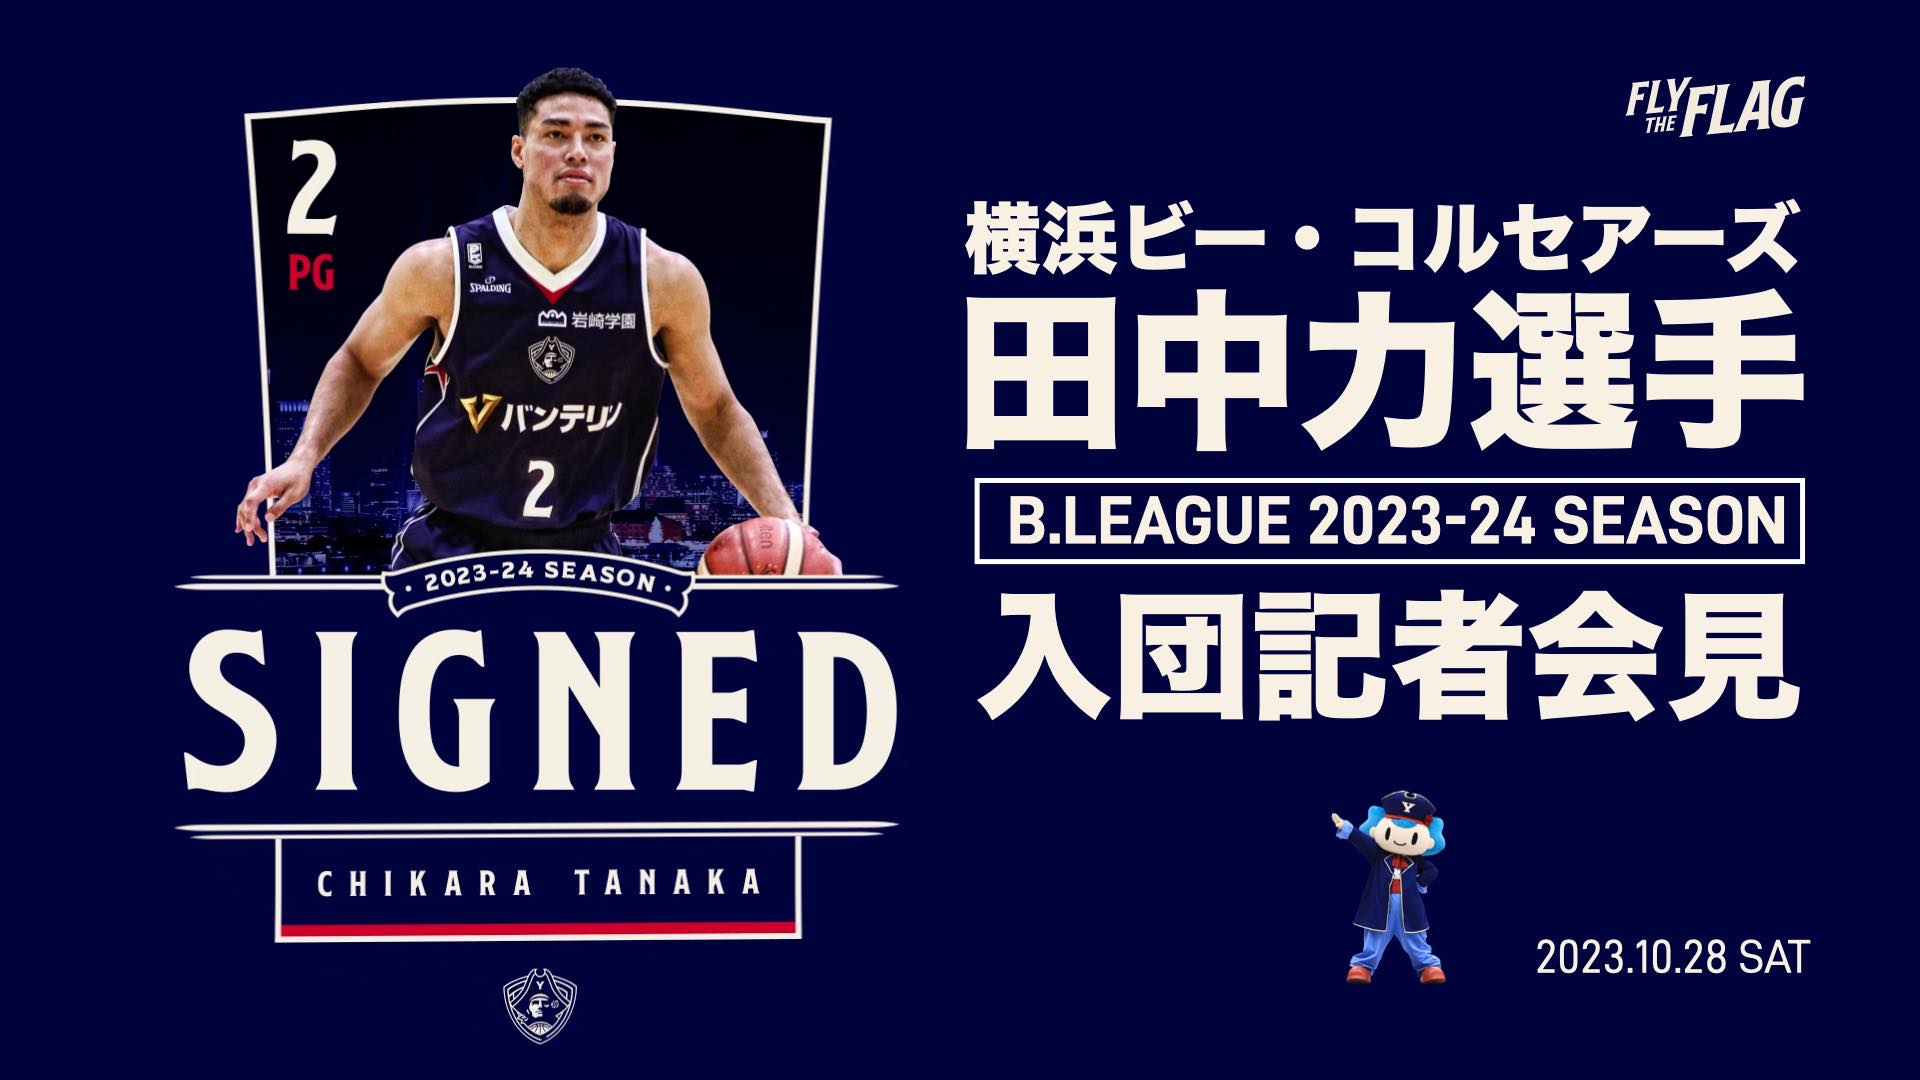 2023-24 BBMカード Bリーグ 横浜ビーコル 河村勇輝 - スポーツ選手